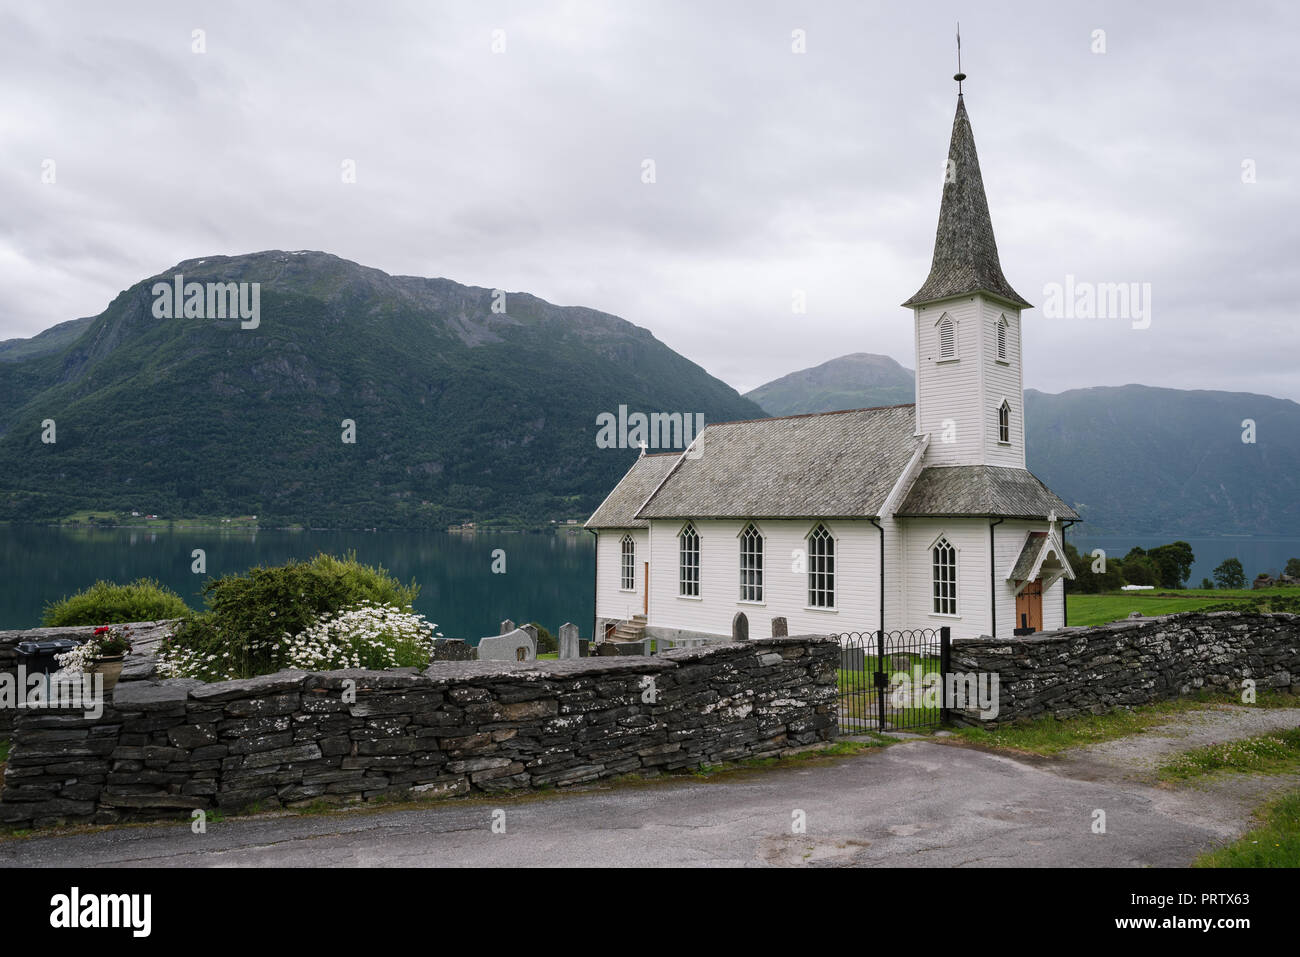 Weiß Holz- Norwegische Kirche - Nes kyrkje, Gemeinde Glanz, Norwegen. In der Nähe von Fjord Lusterfjord. Sommer bewölkt Landschaft Stockfoto